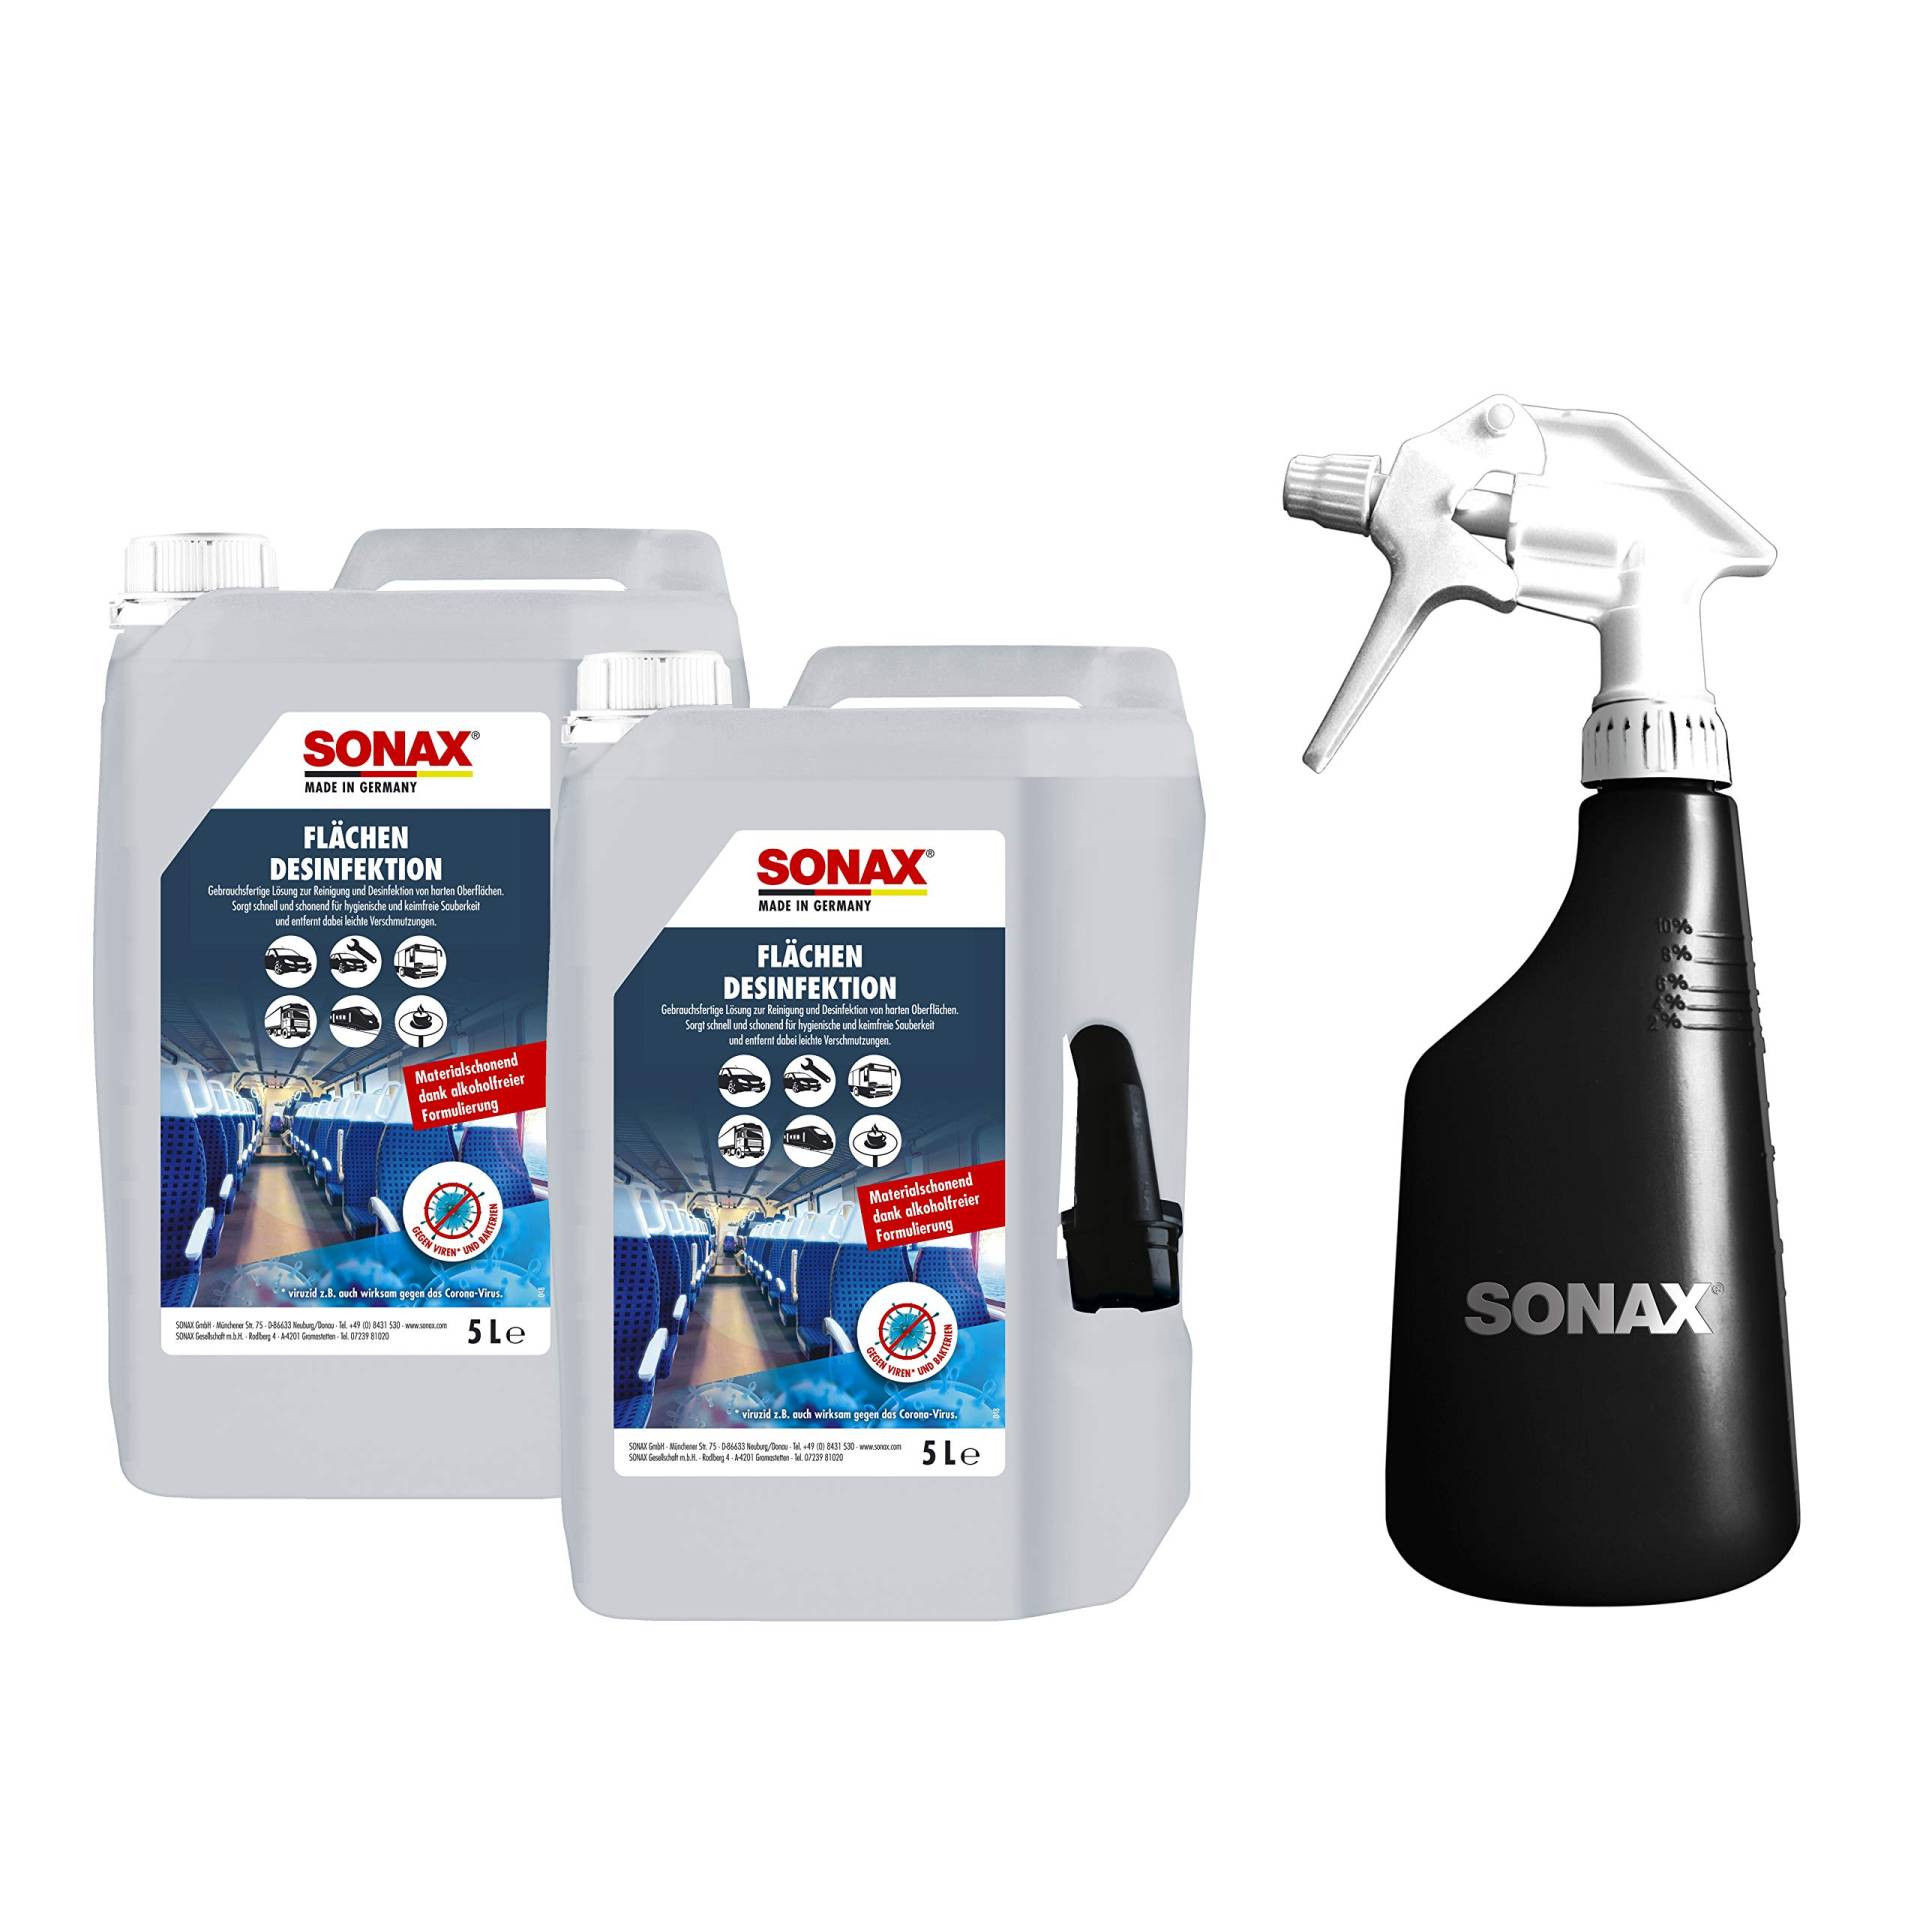 SONAX FlächenDesinfektion (2 x 5 Liter) + Sprühboy ist die gebrauchsfertige Lösung zur Reinigung und Desinfektion von allen harten Oberflächen rund ums Auto | Art-Nr. 07686000 von SONAX